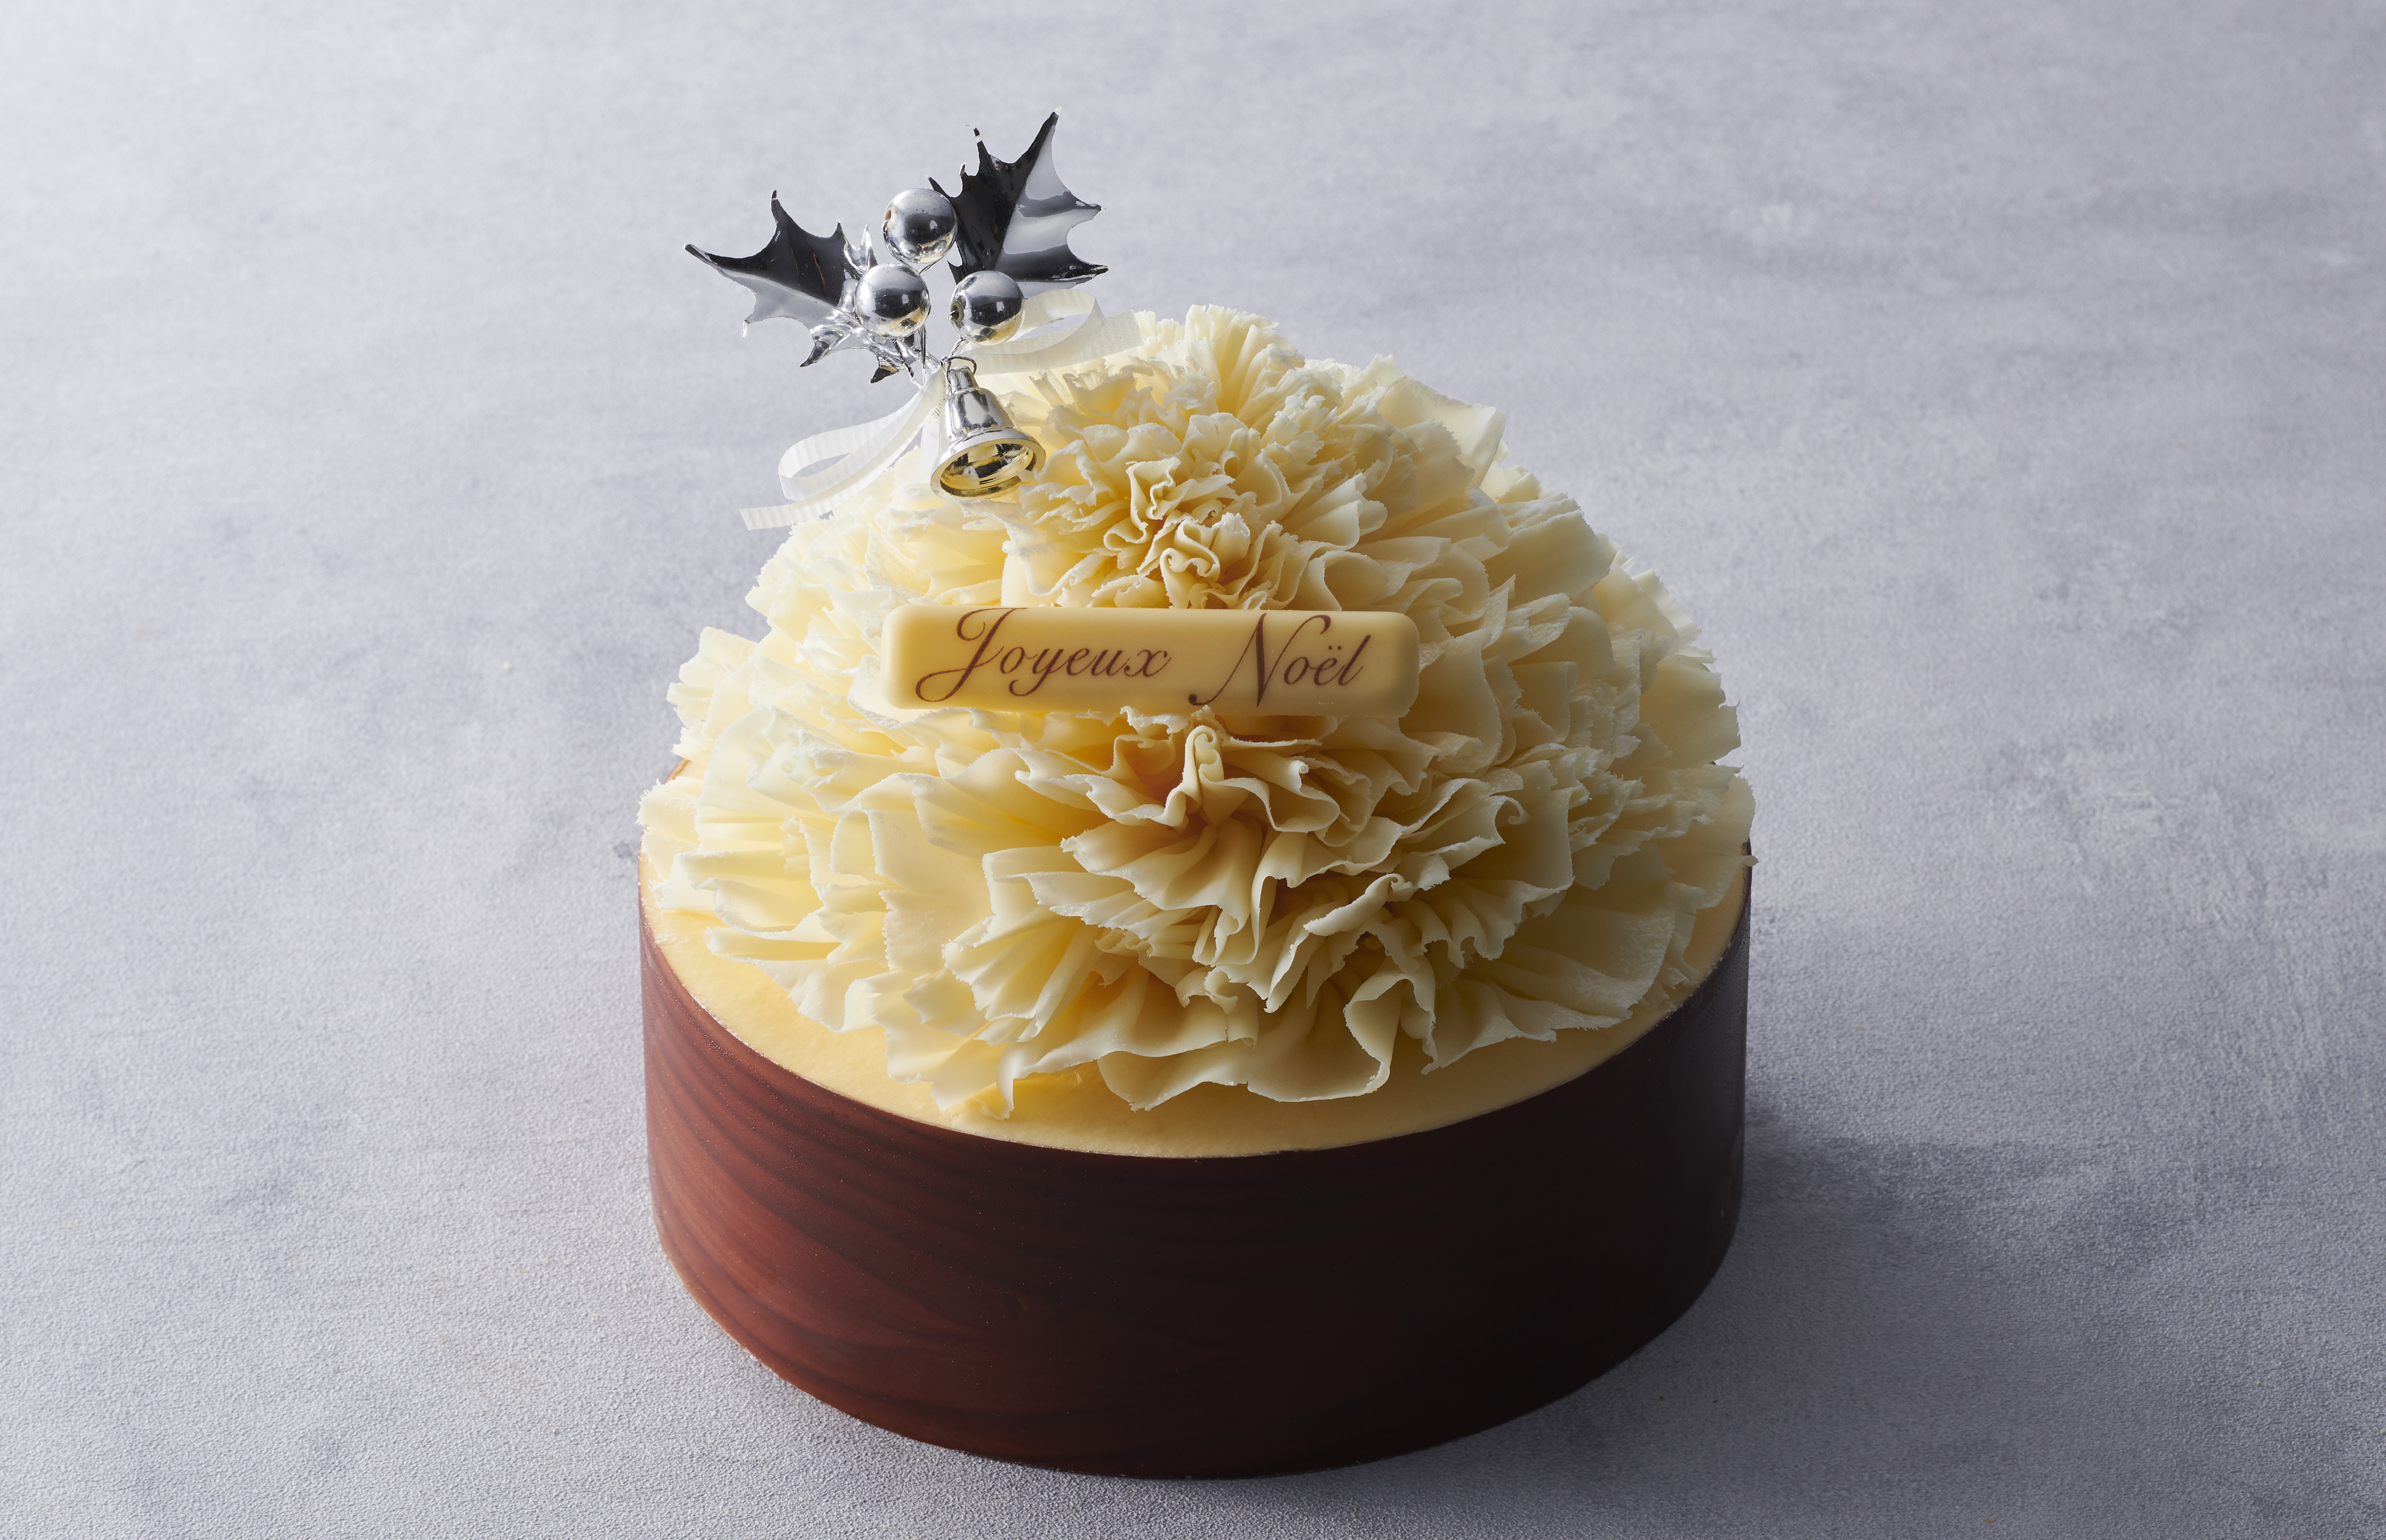 ベルギー王室御用達チョコレートブランド「ヴィタメール」がお届けする2021年クリスマスケーキコレクション10月中旬よりご予約受付開始のサブ画像7